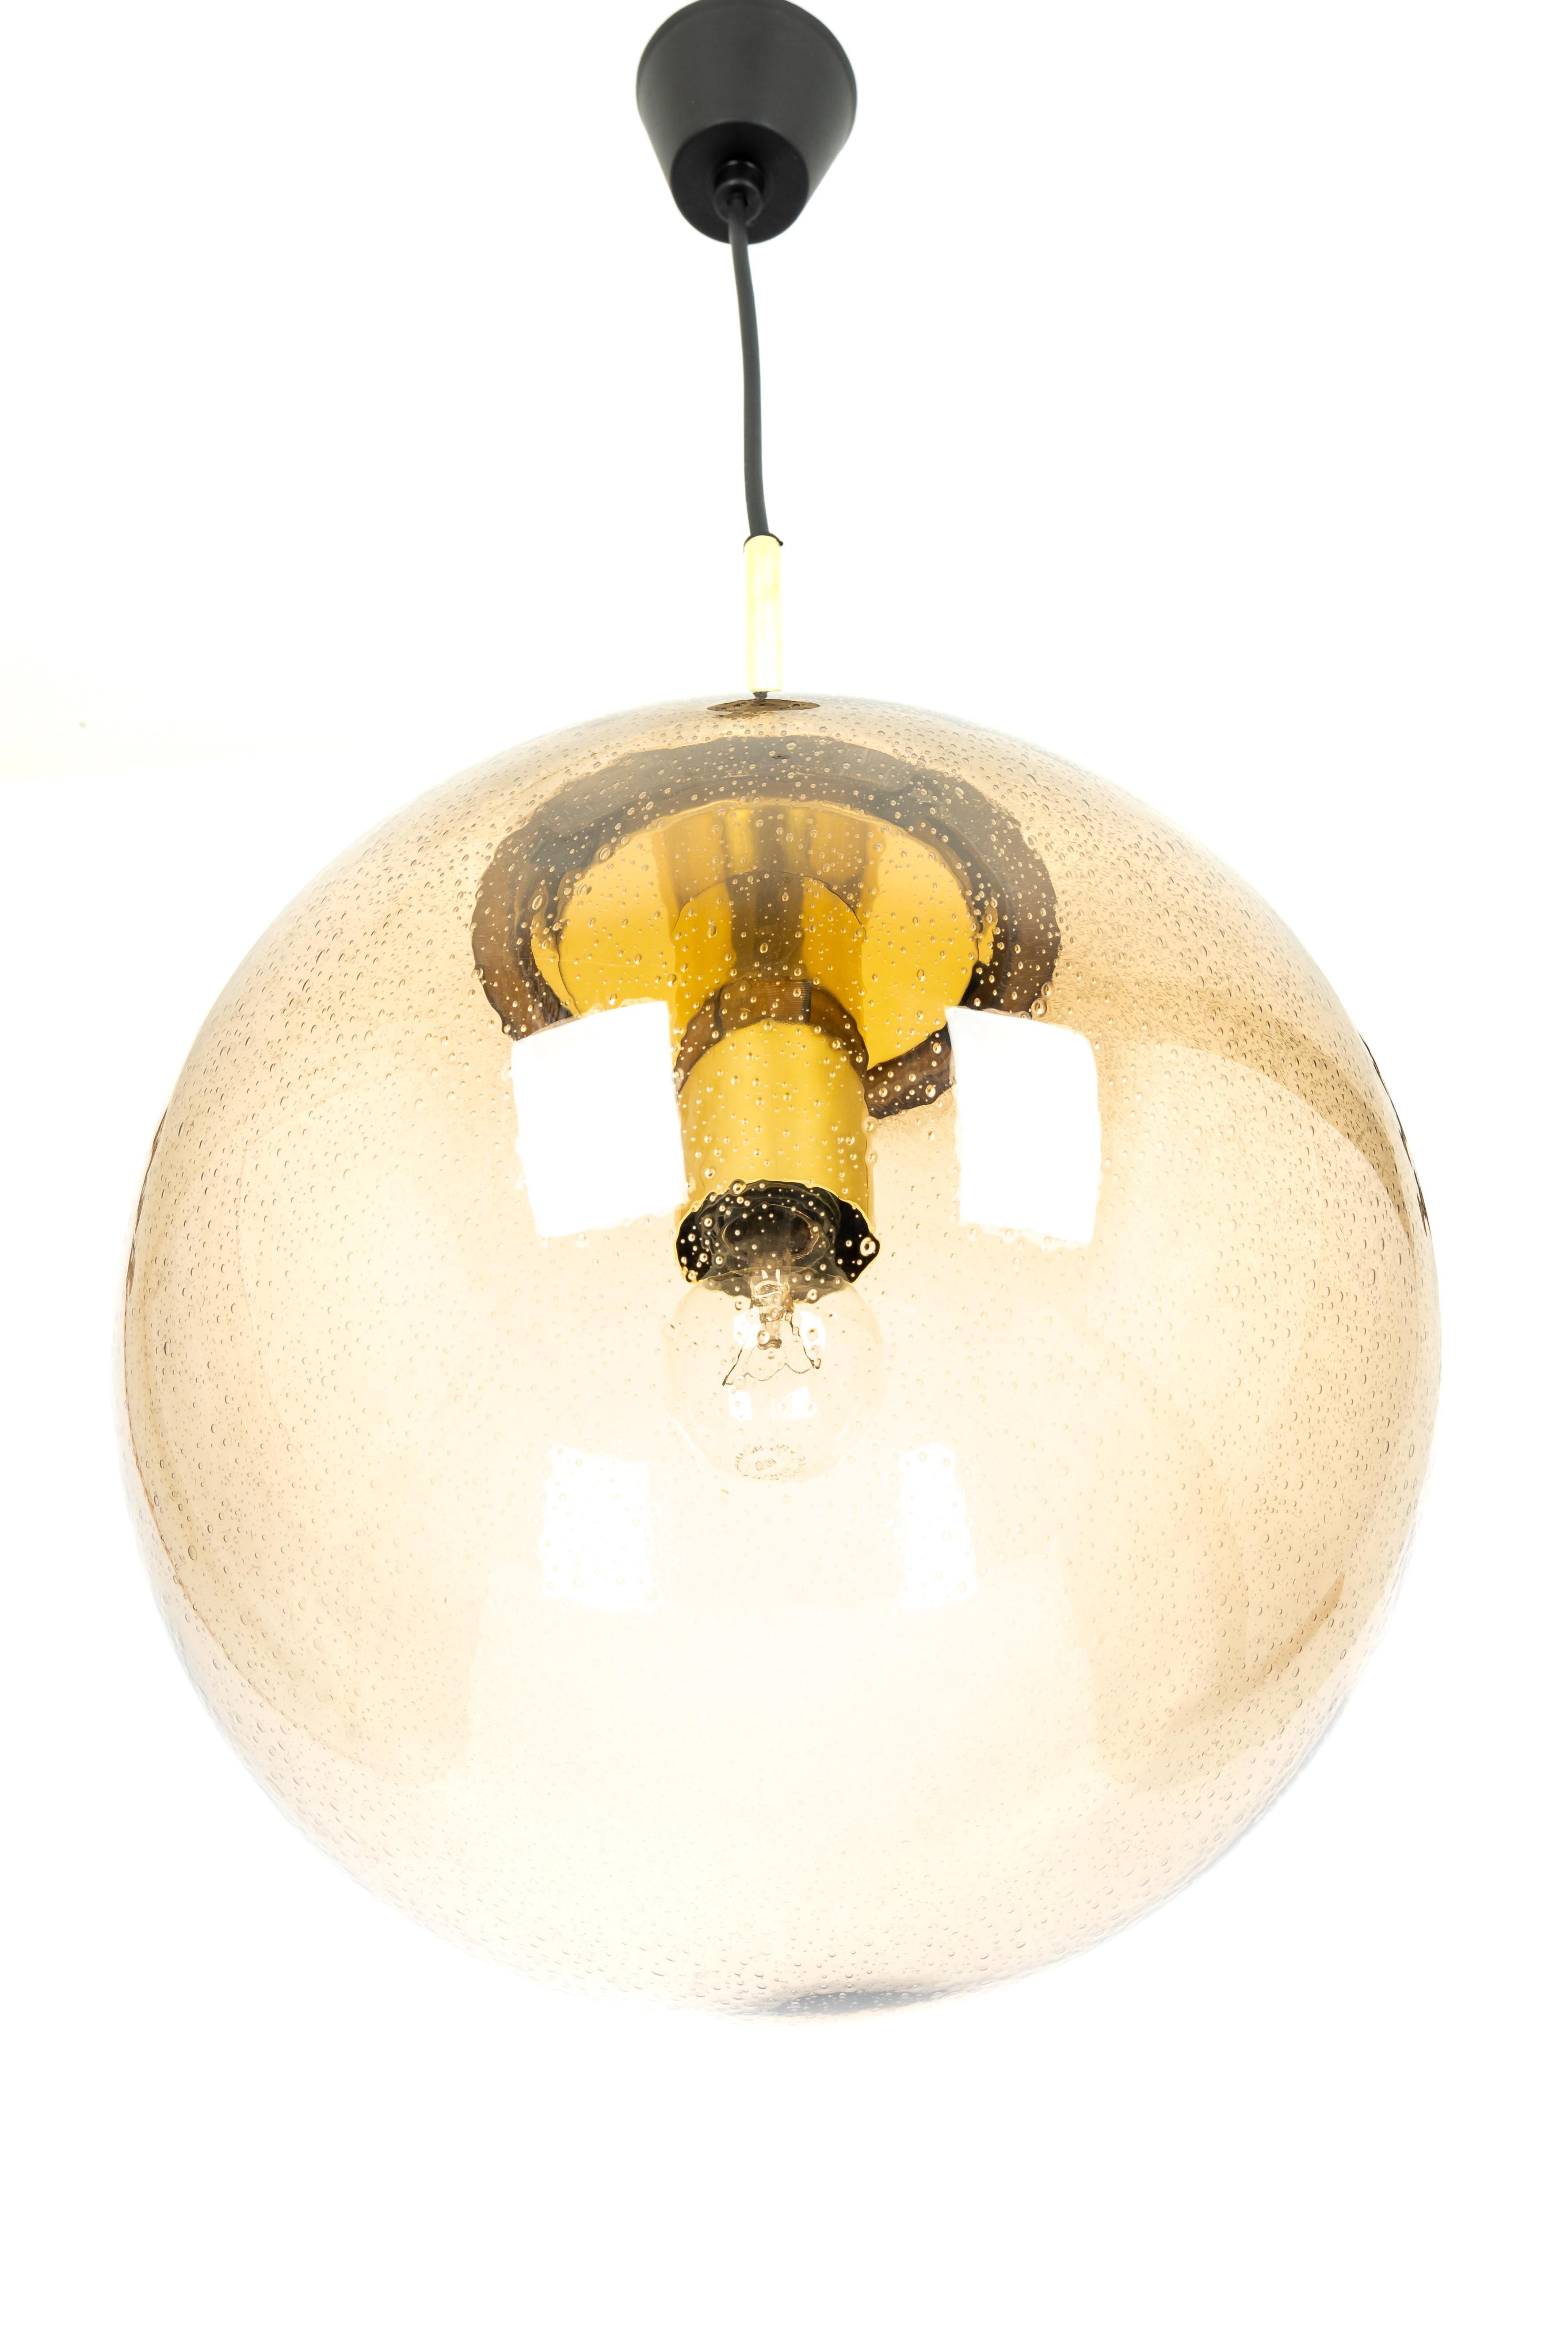 Großer Kugelanhänger aus Rauchglas, hergestellt von Limburg, Deutschland, ca. 1970-1979.

Fassungen: Eine x E27 Standard-Glühbirne 
Glühbirnen sind nicht enthalten. Es ist möglich, dieses Gerät in allen Ländern zu installieren (US, UK, Europa,